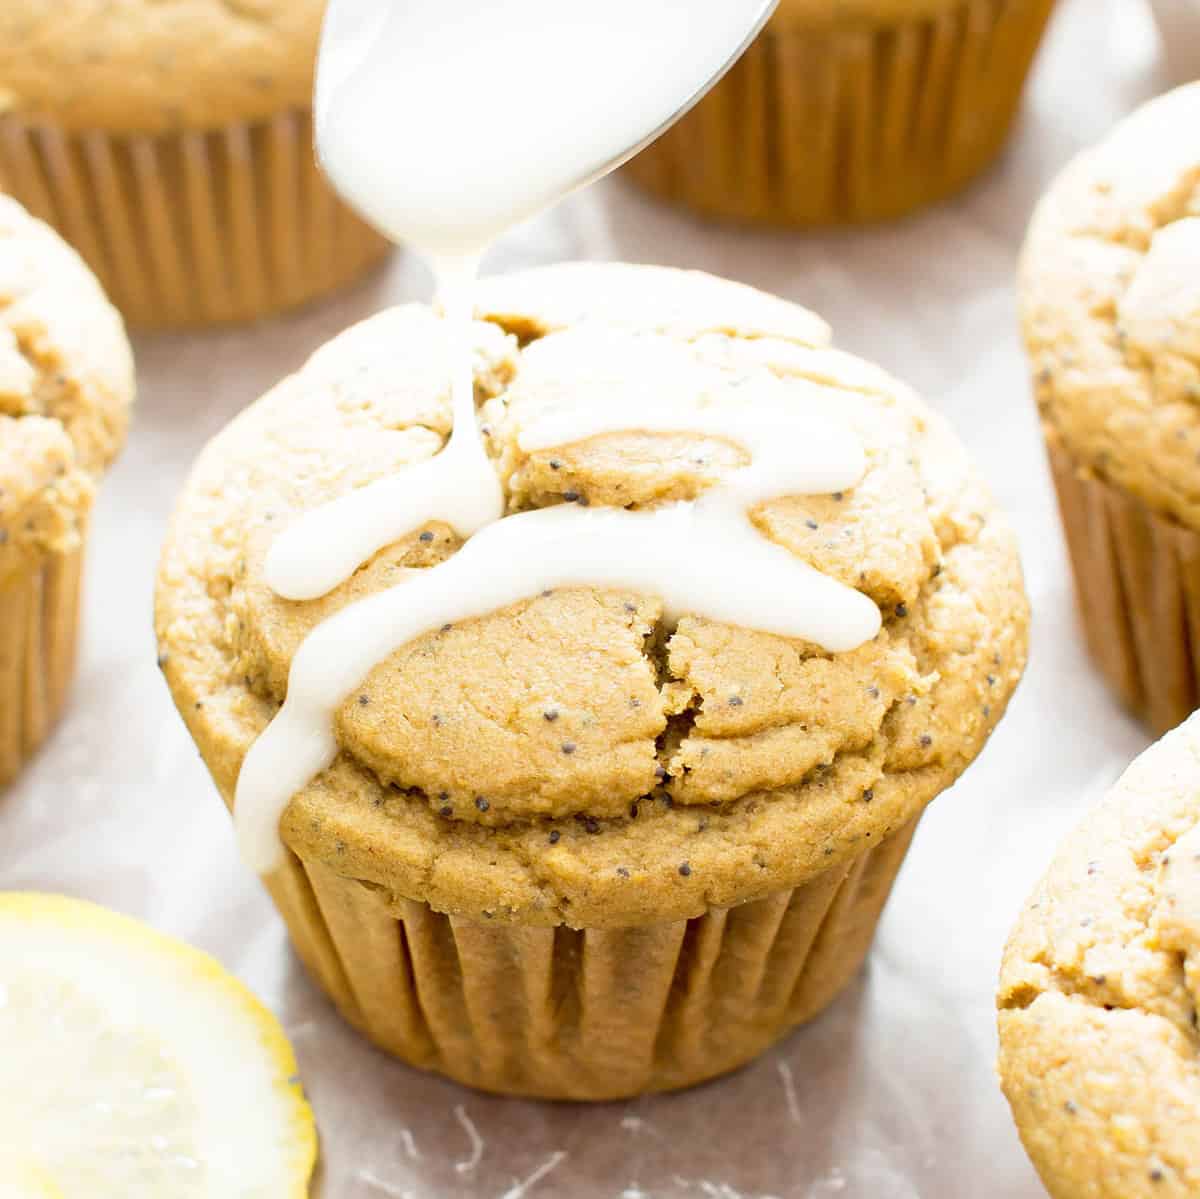 Lemon Glaze for Muffins & Bread